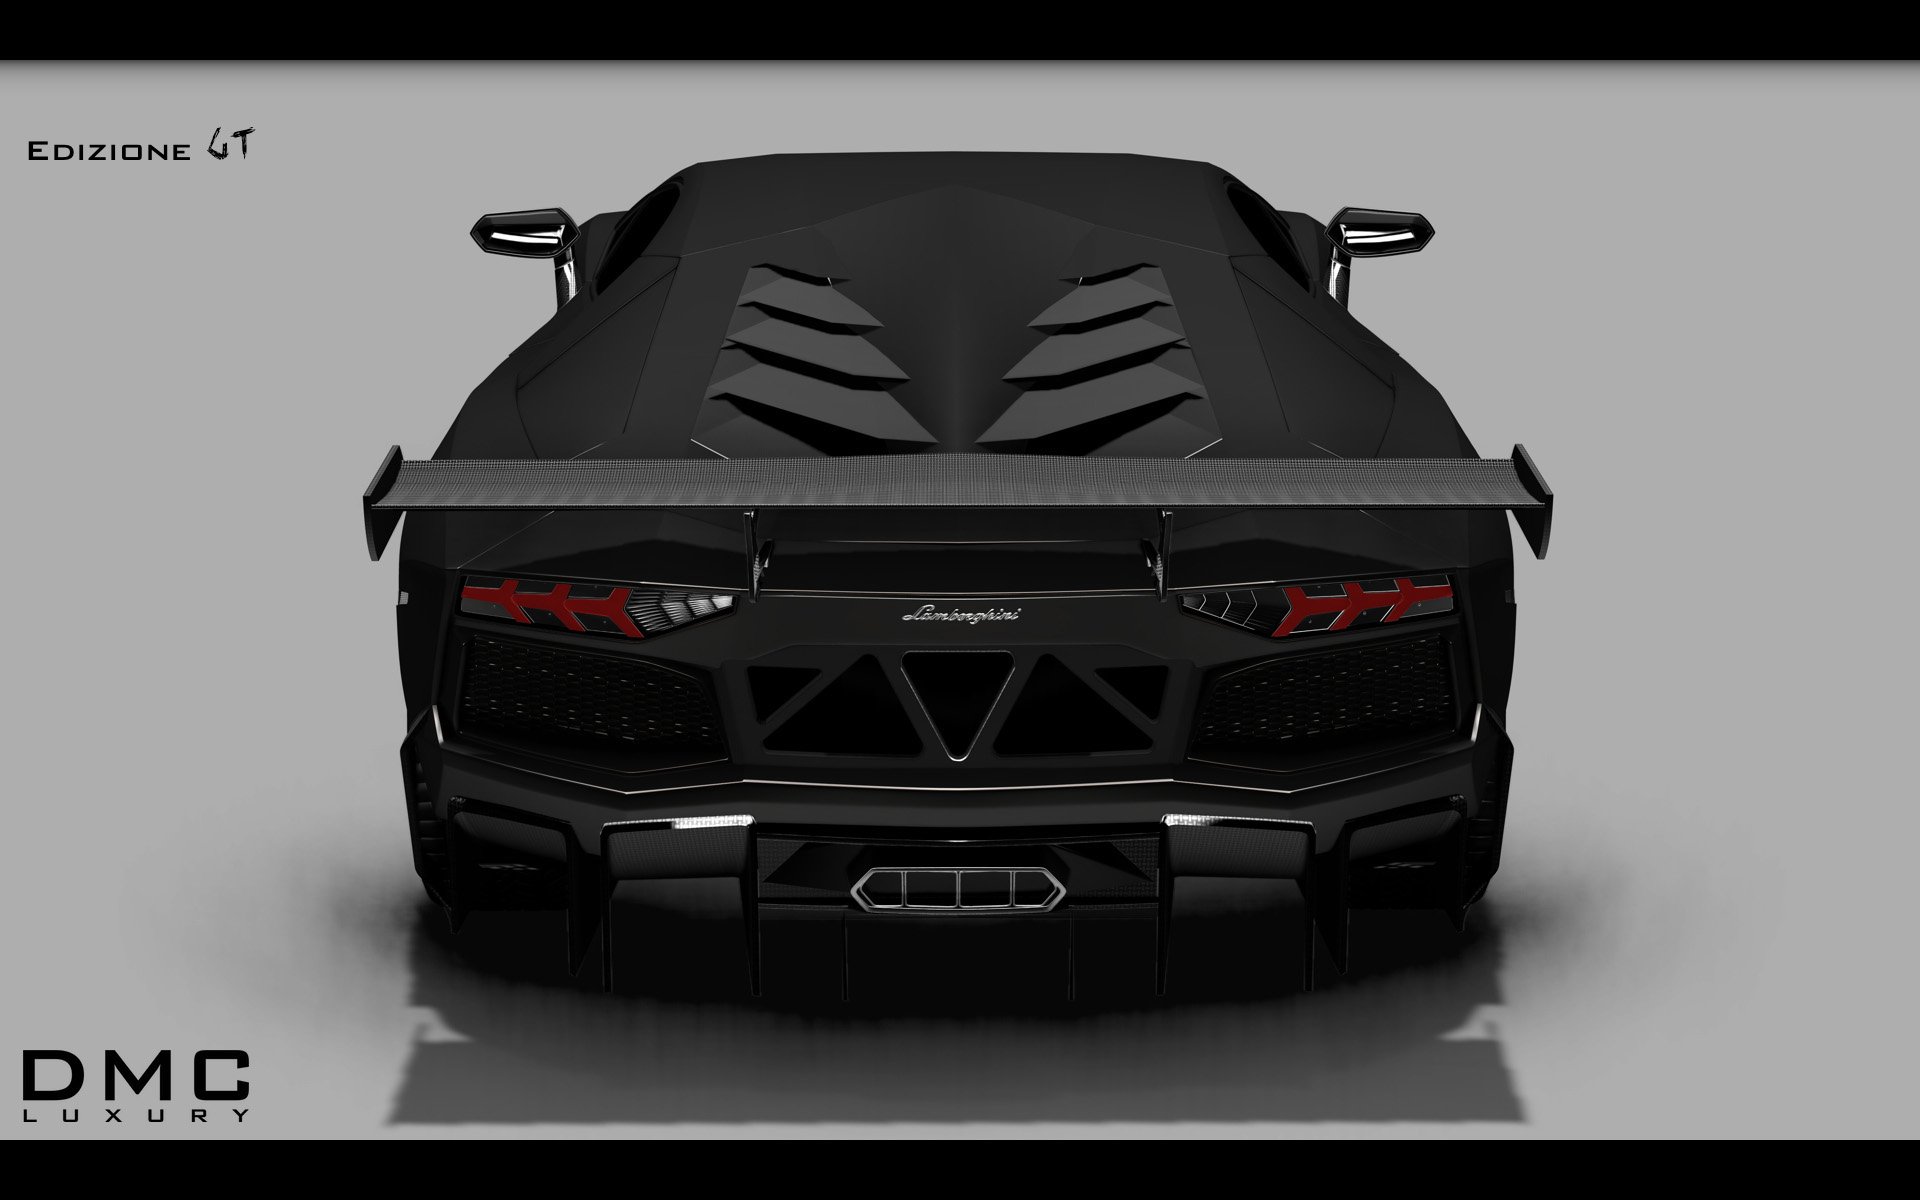 2014, Dmc, Lamborghini, Aventador, Lp988, Edizione, G t, Supercar, Gd Wallpaper